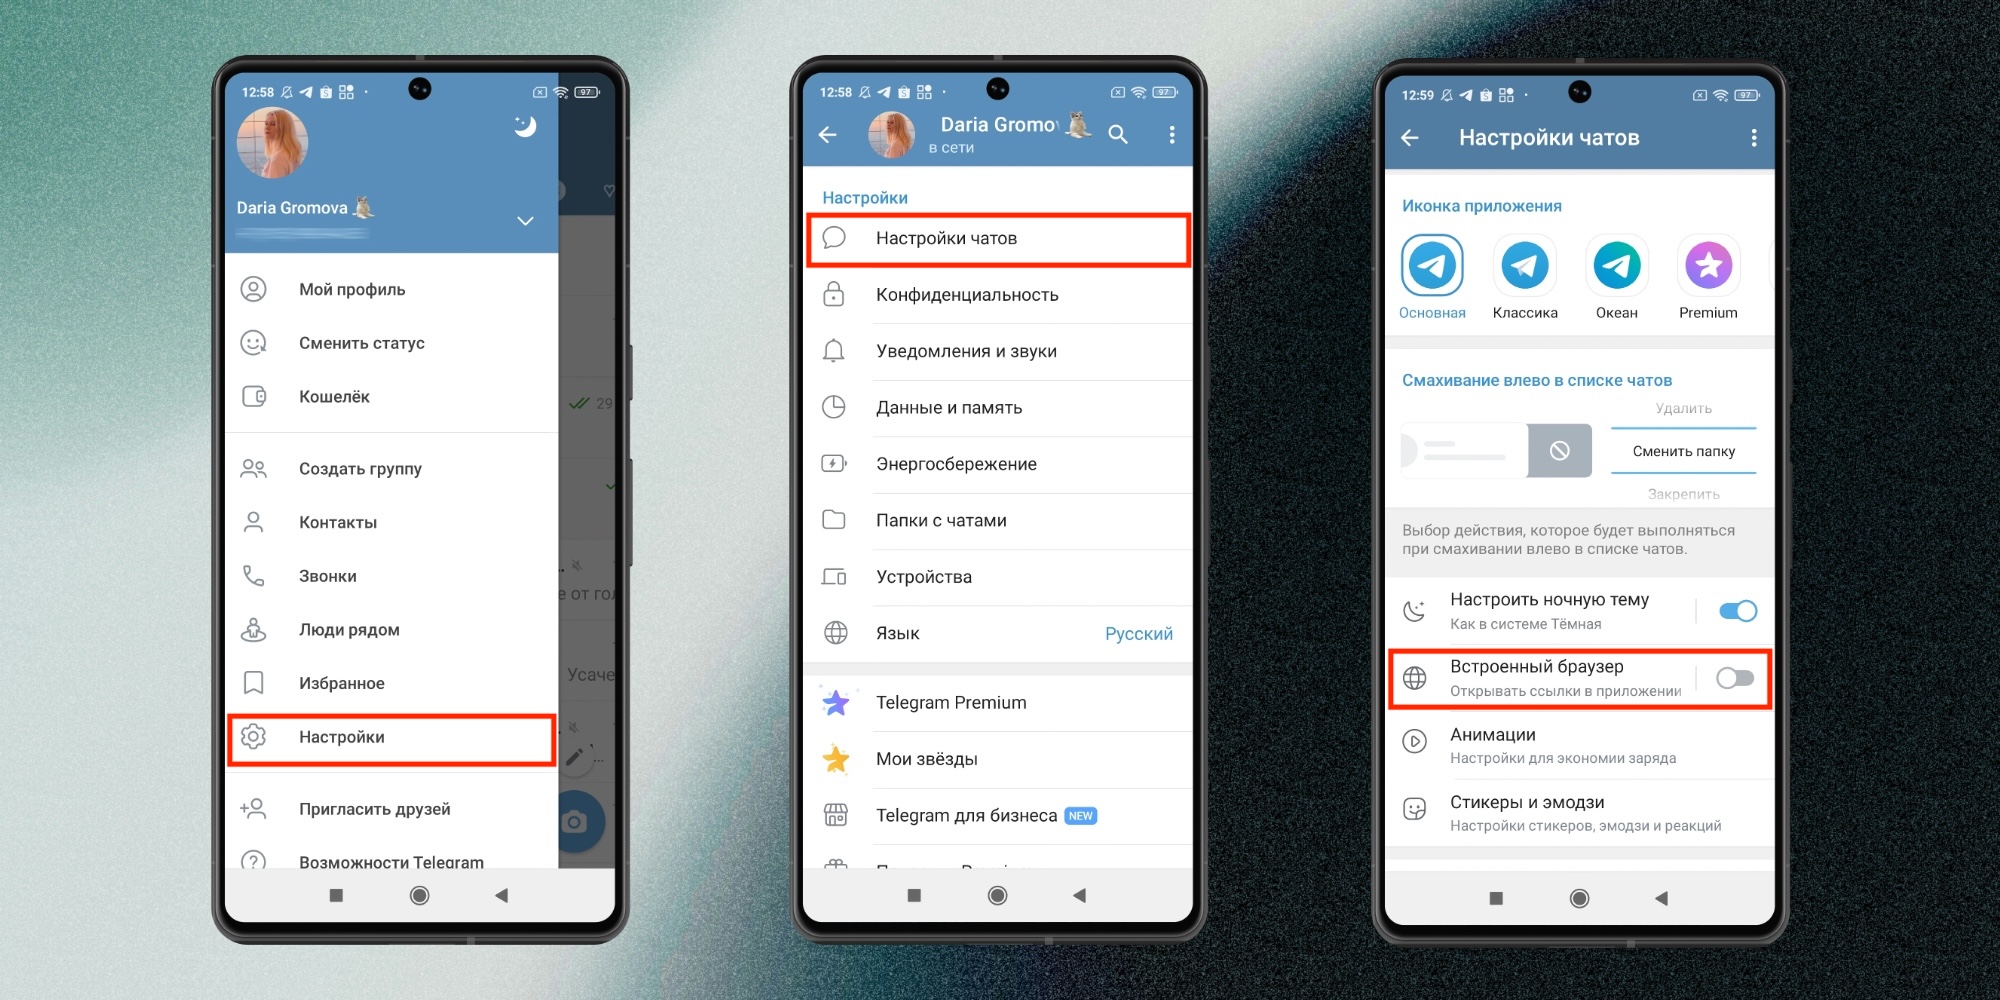 Как отключить новый телеграм-браузер на Android